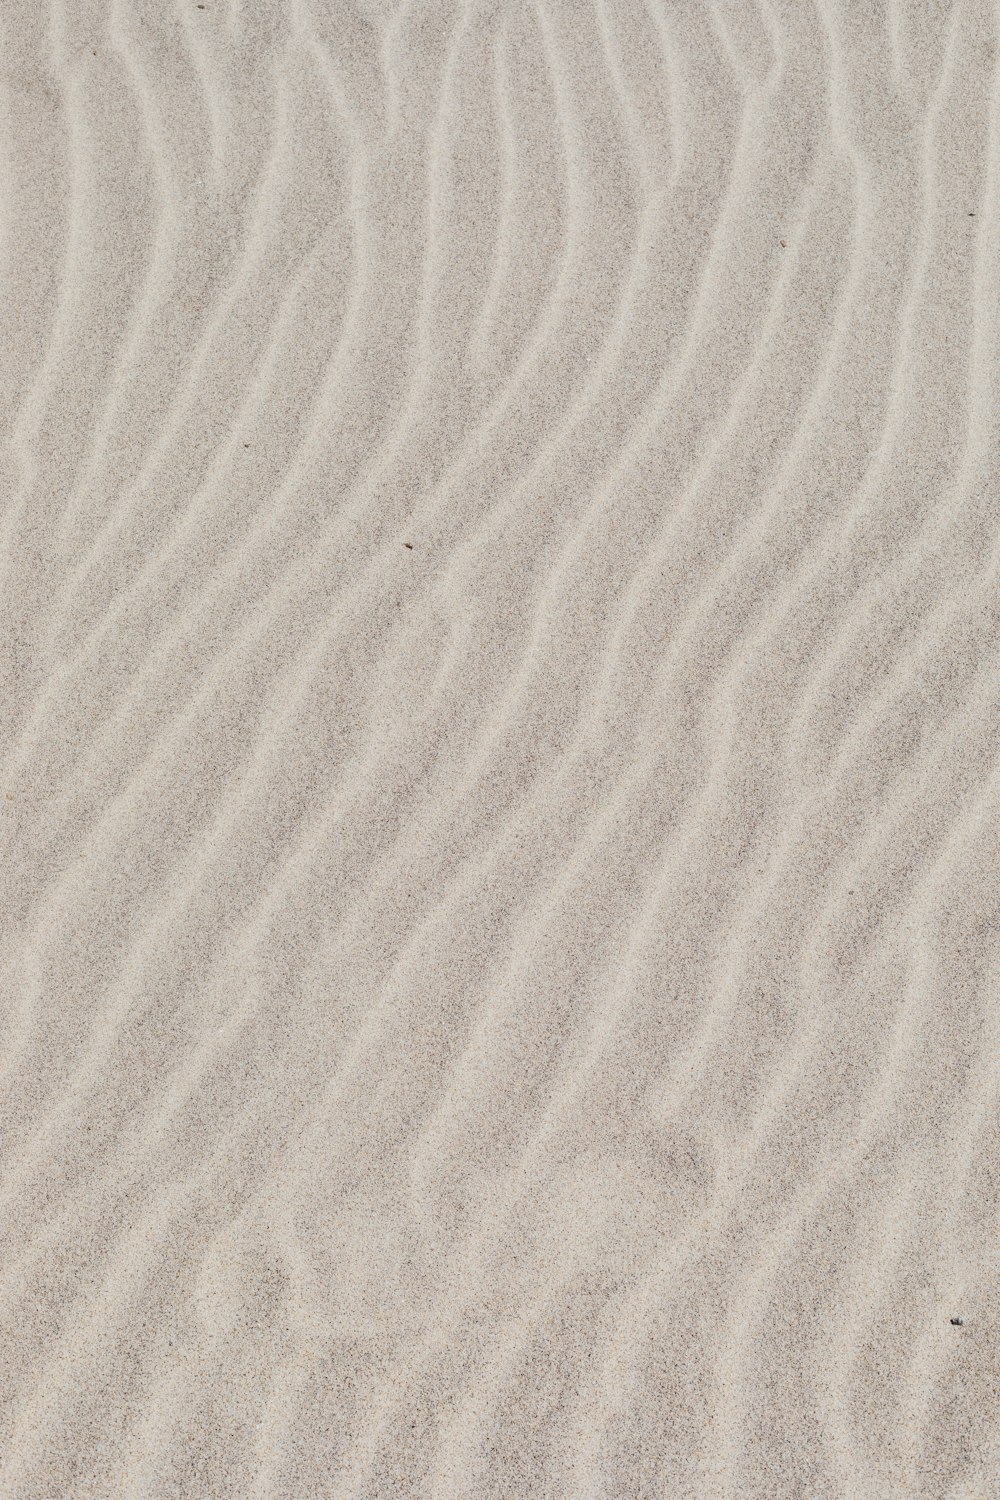 areia branca com sombra da pessoa